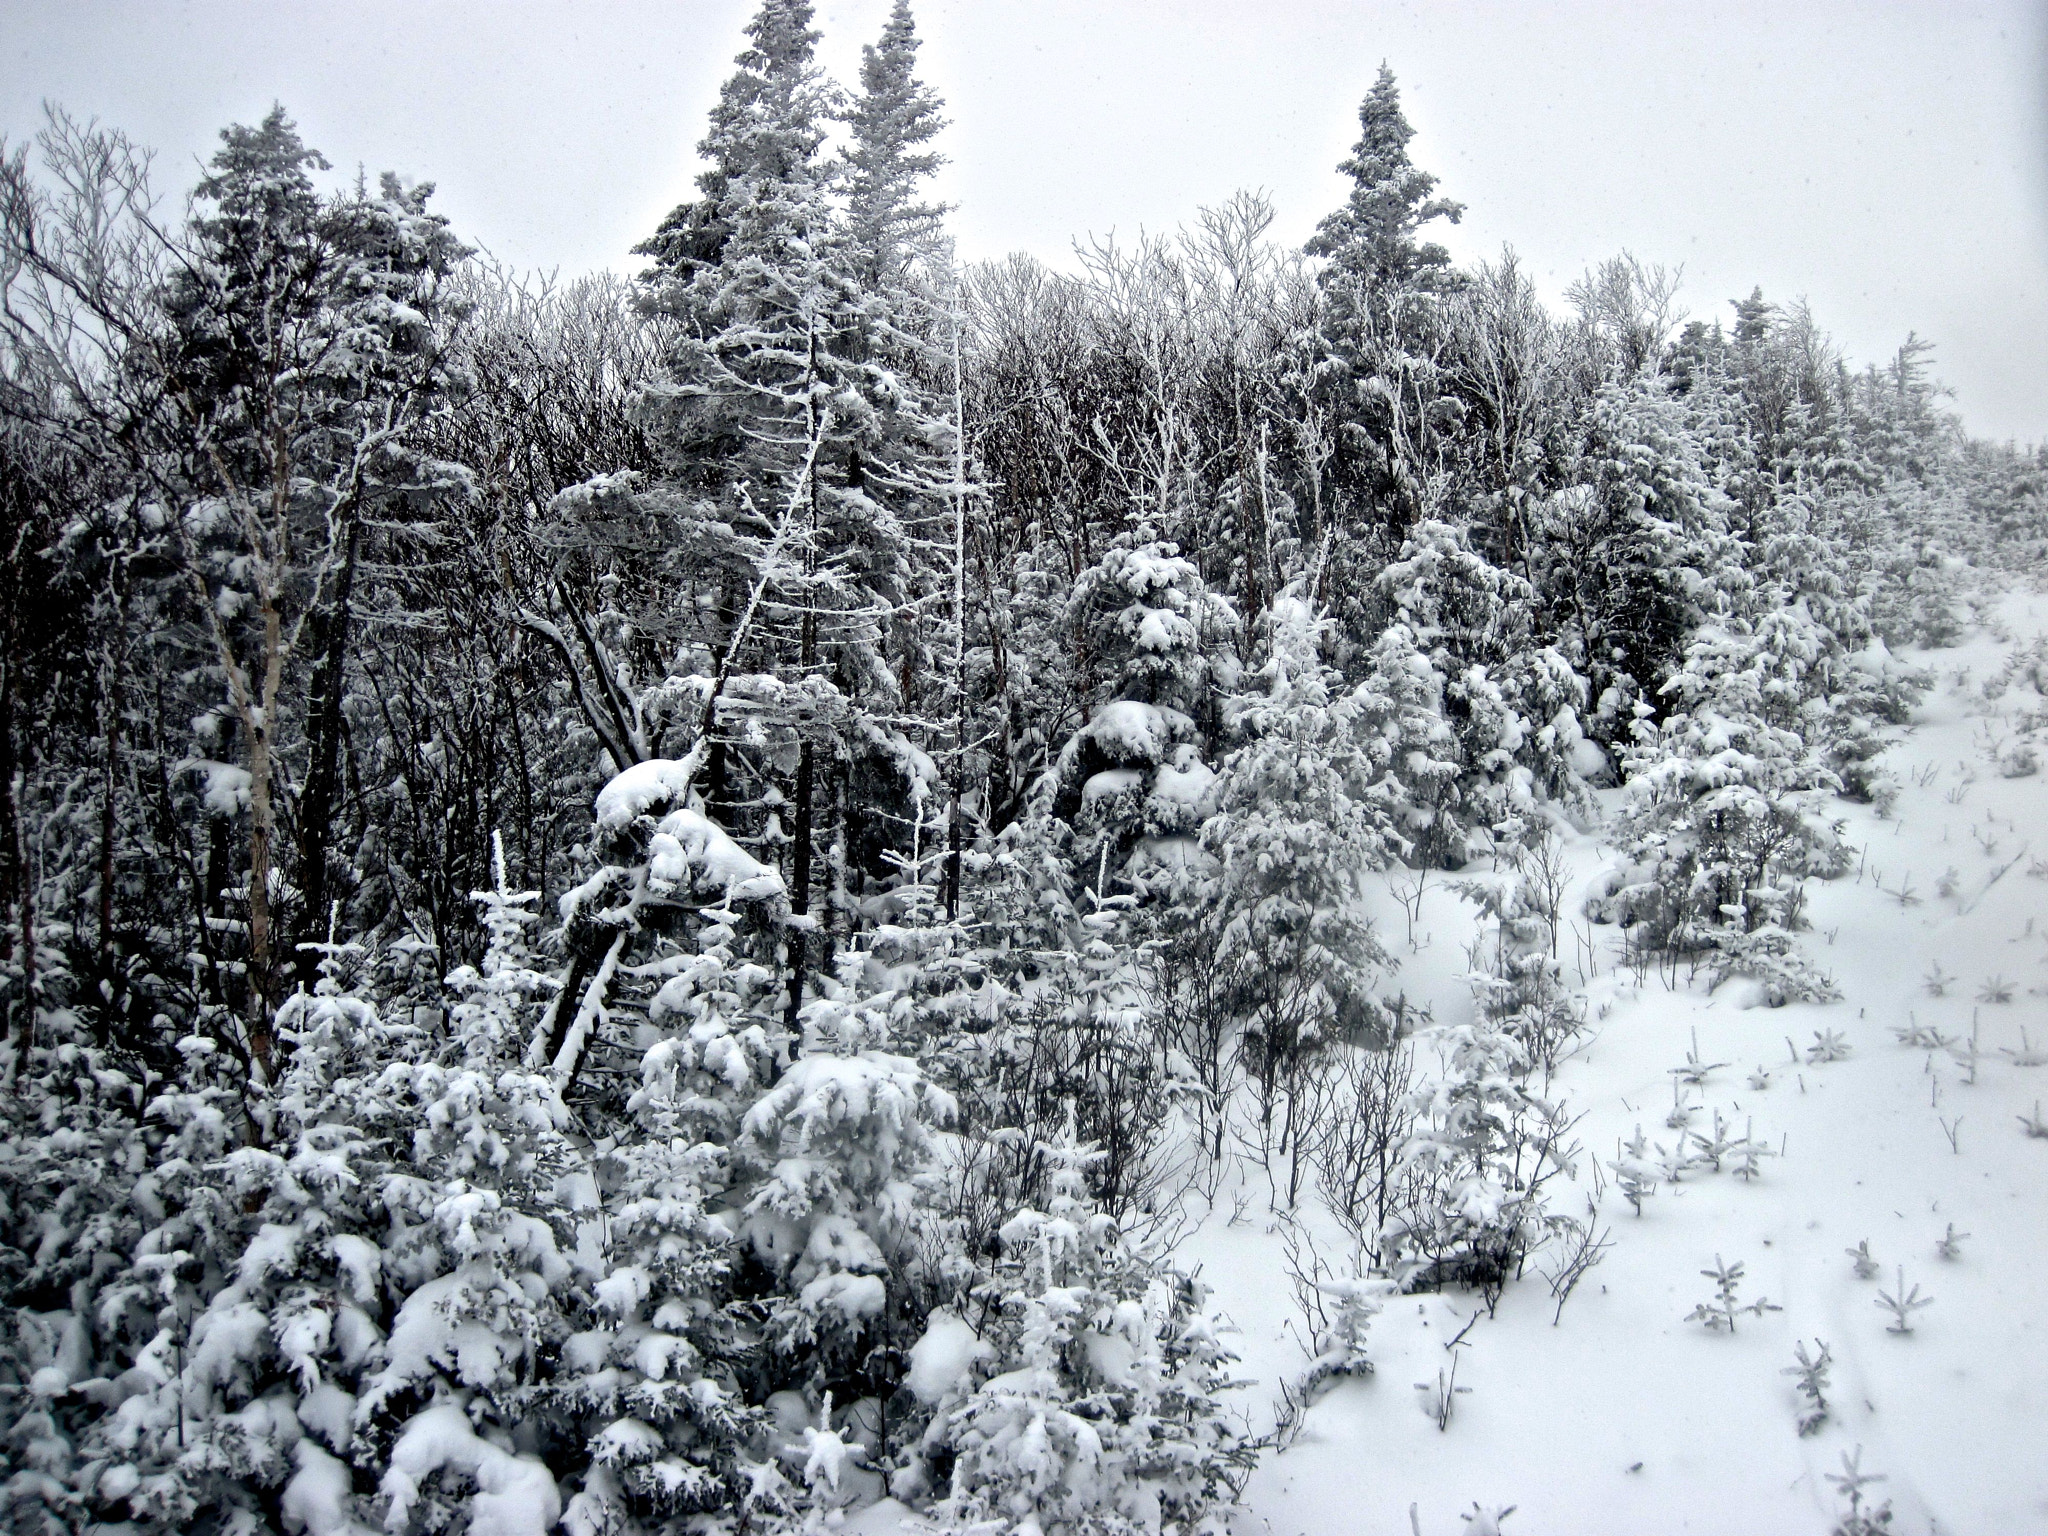 Canon PowerShot D10 sample photo. Sugarbush mount ellen lift snow trees photography